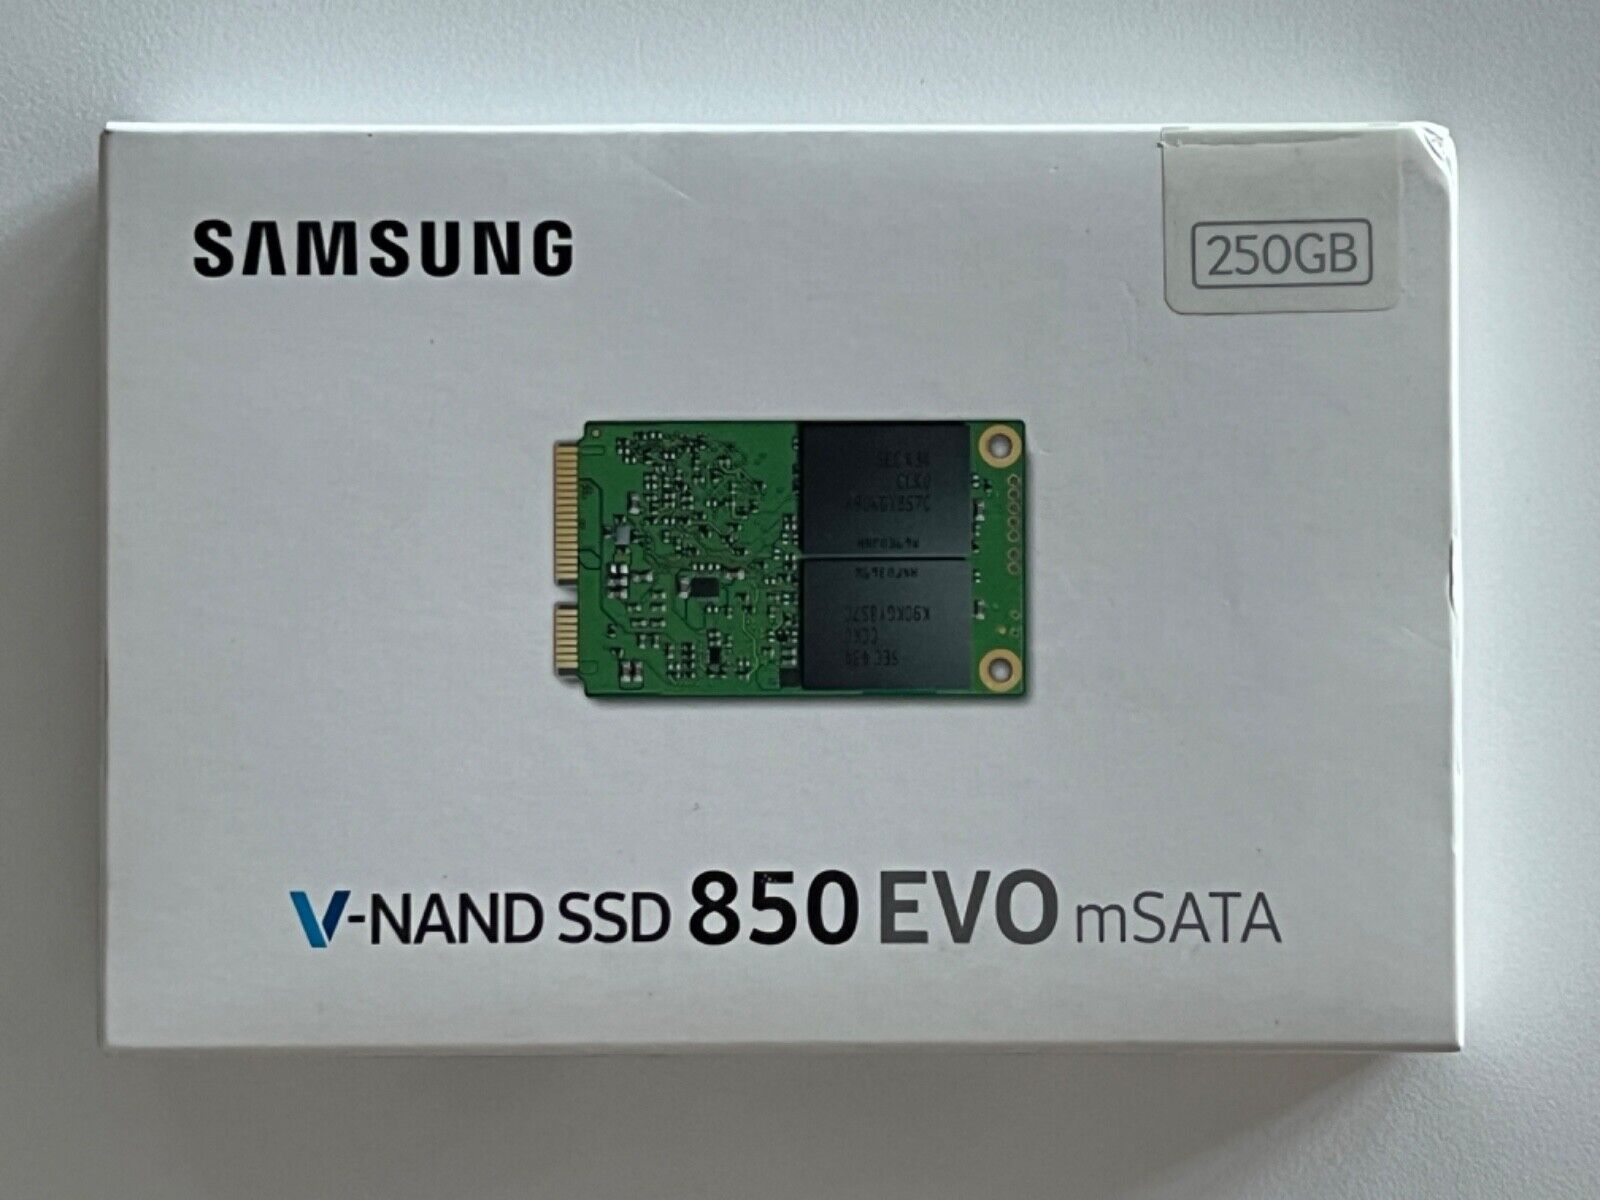 Samsung 850 EVO mSATA 250GB SSD 3D V-NAND  MZ-M5E250 - Brand New Sealed